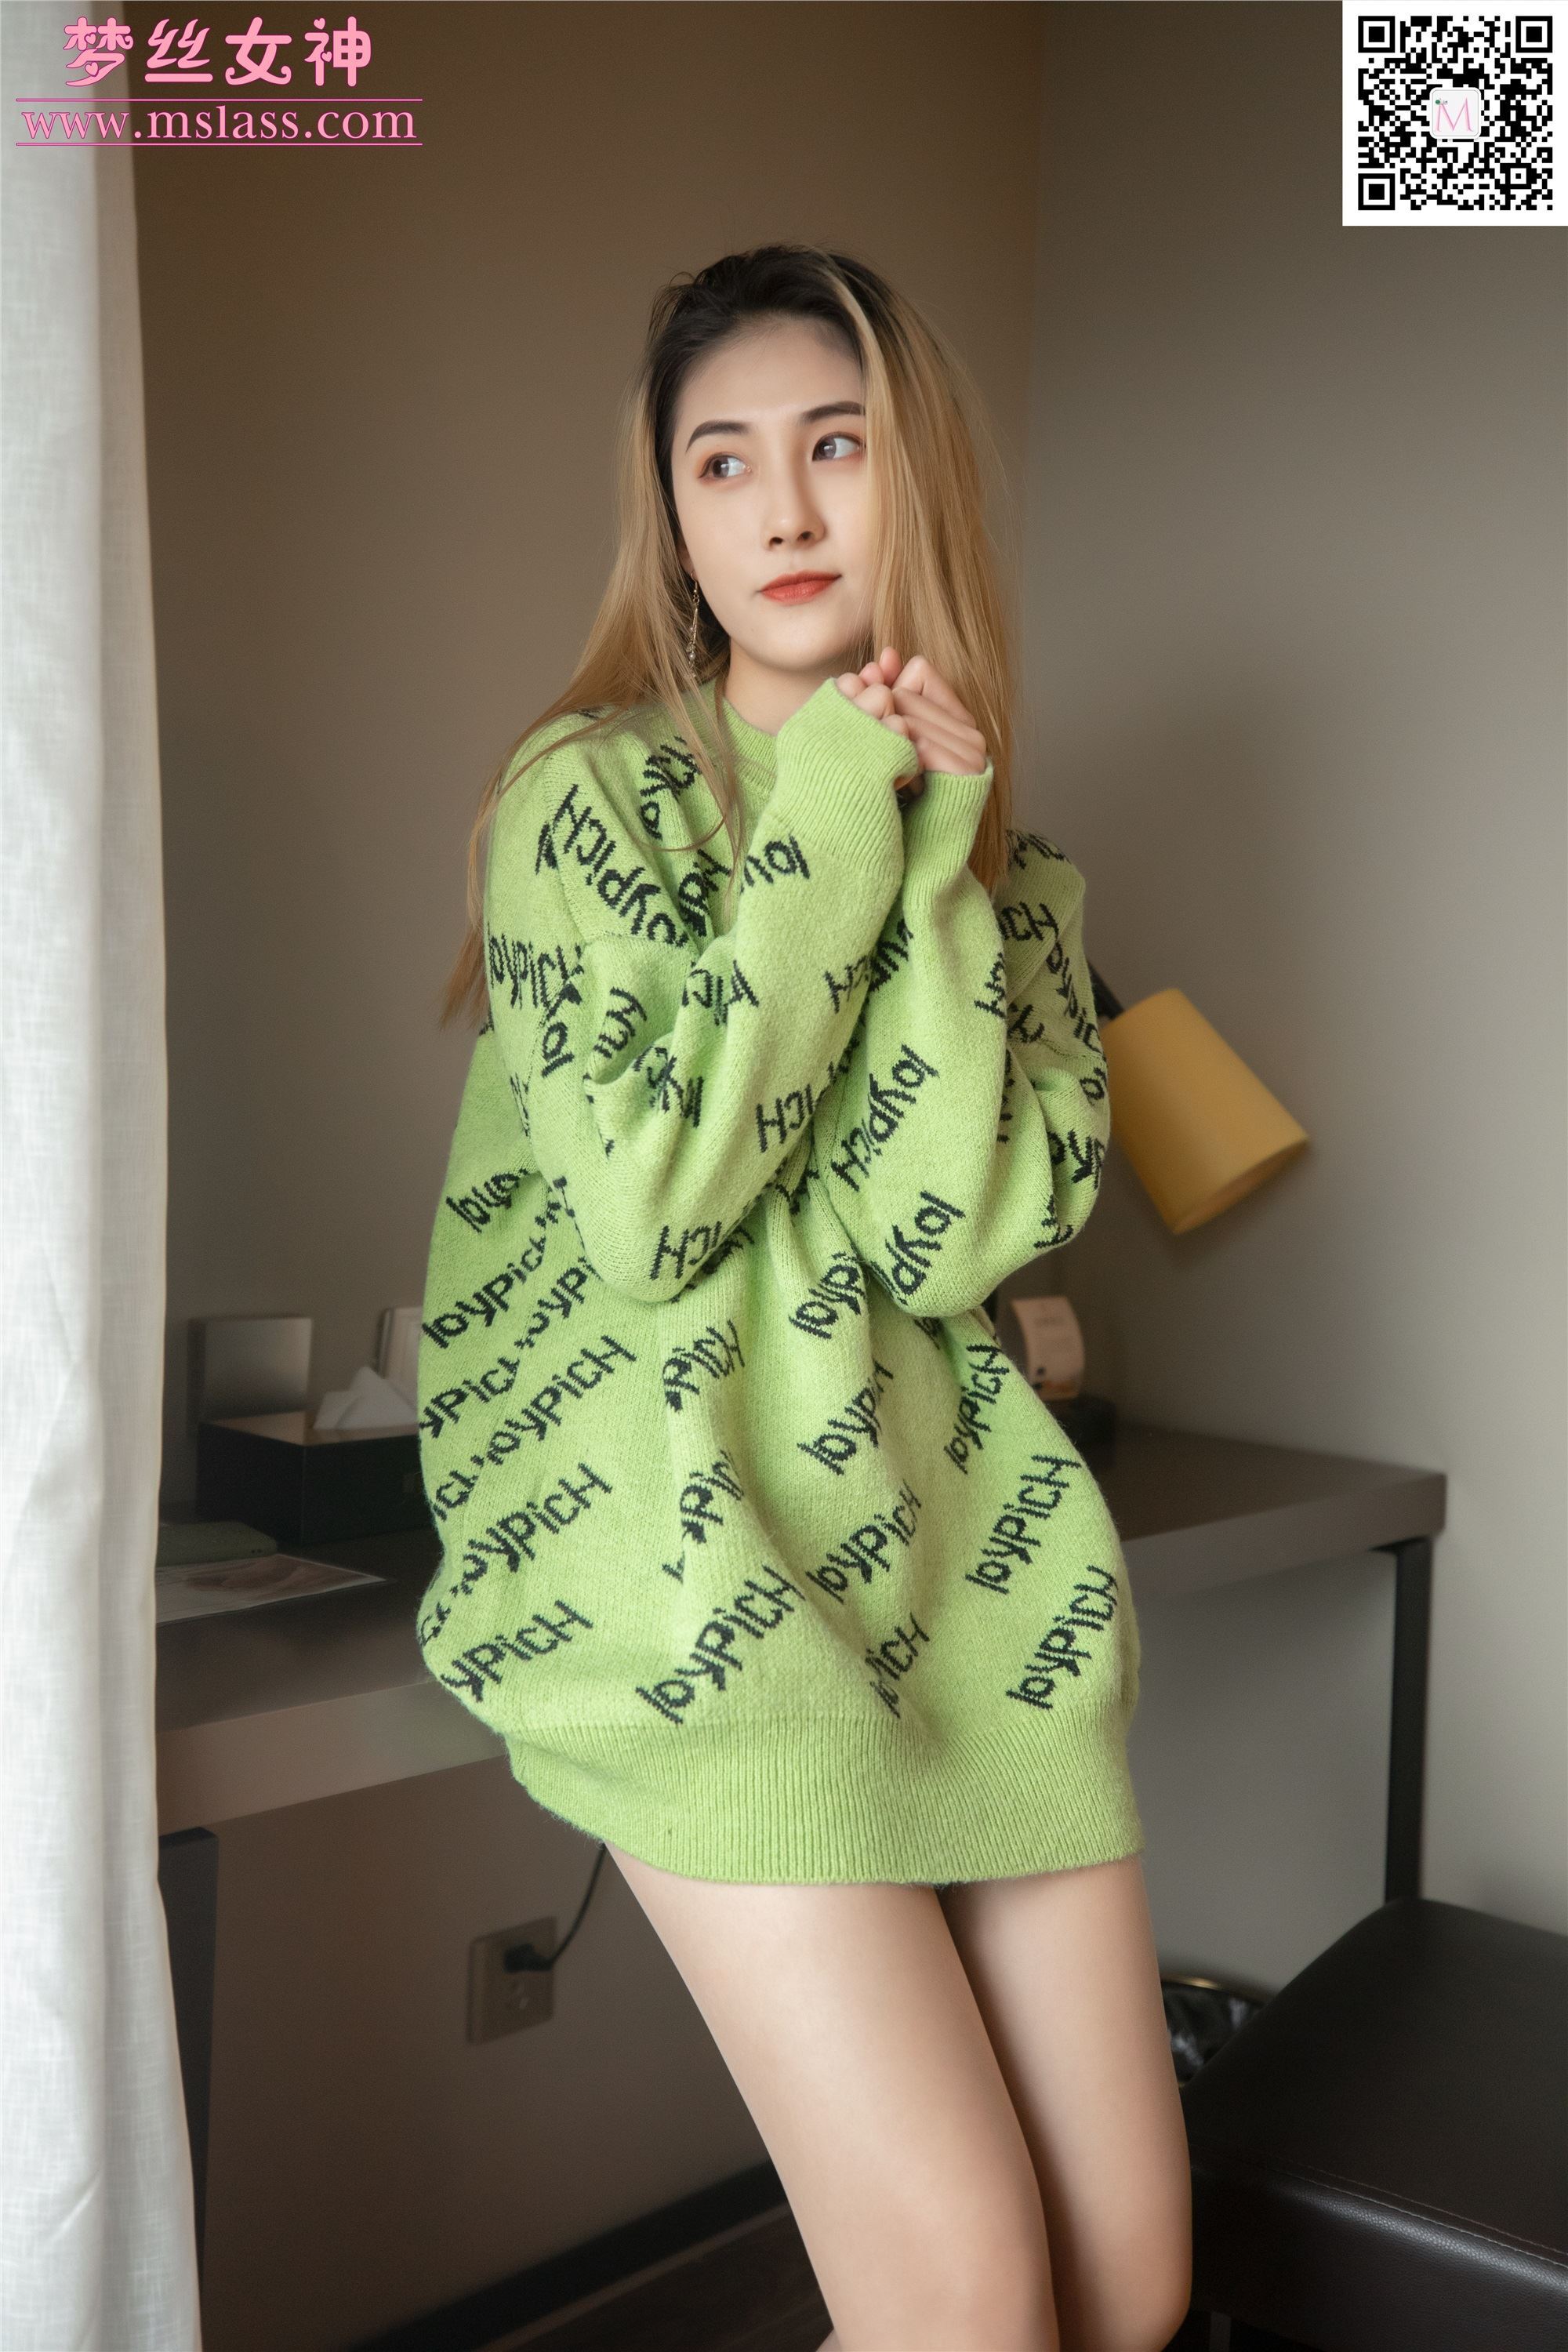 MSLASS梦丝女神 2019-11-27 Vol.075 小允儿 喜欢绿绿的衣服